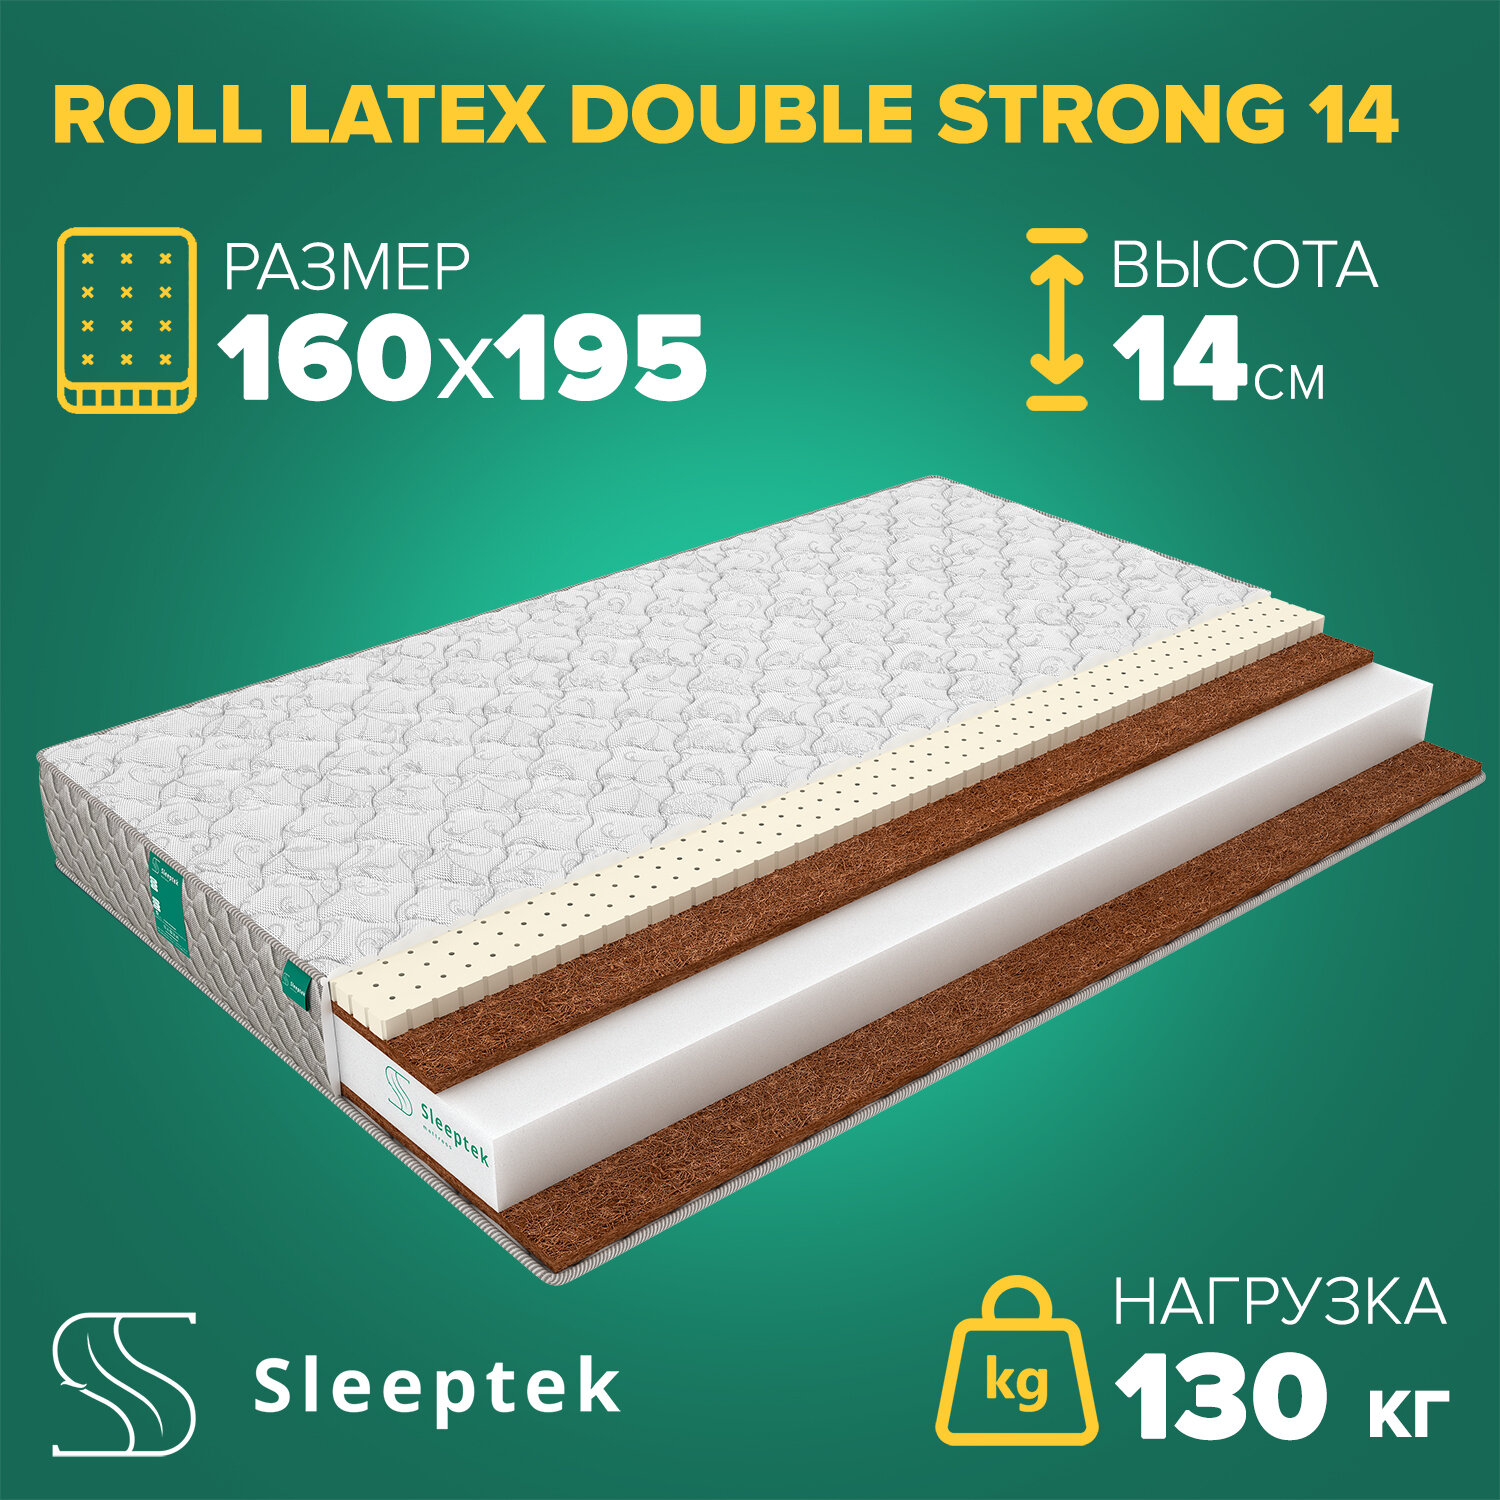 Матрас Sleeptek Roll Latex DoubleStrong 14 160х195